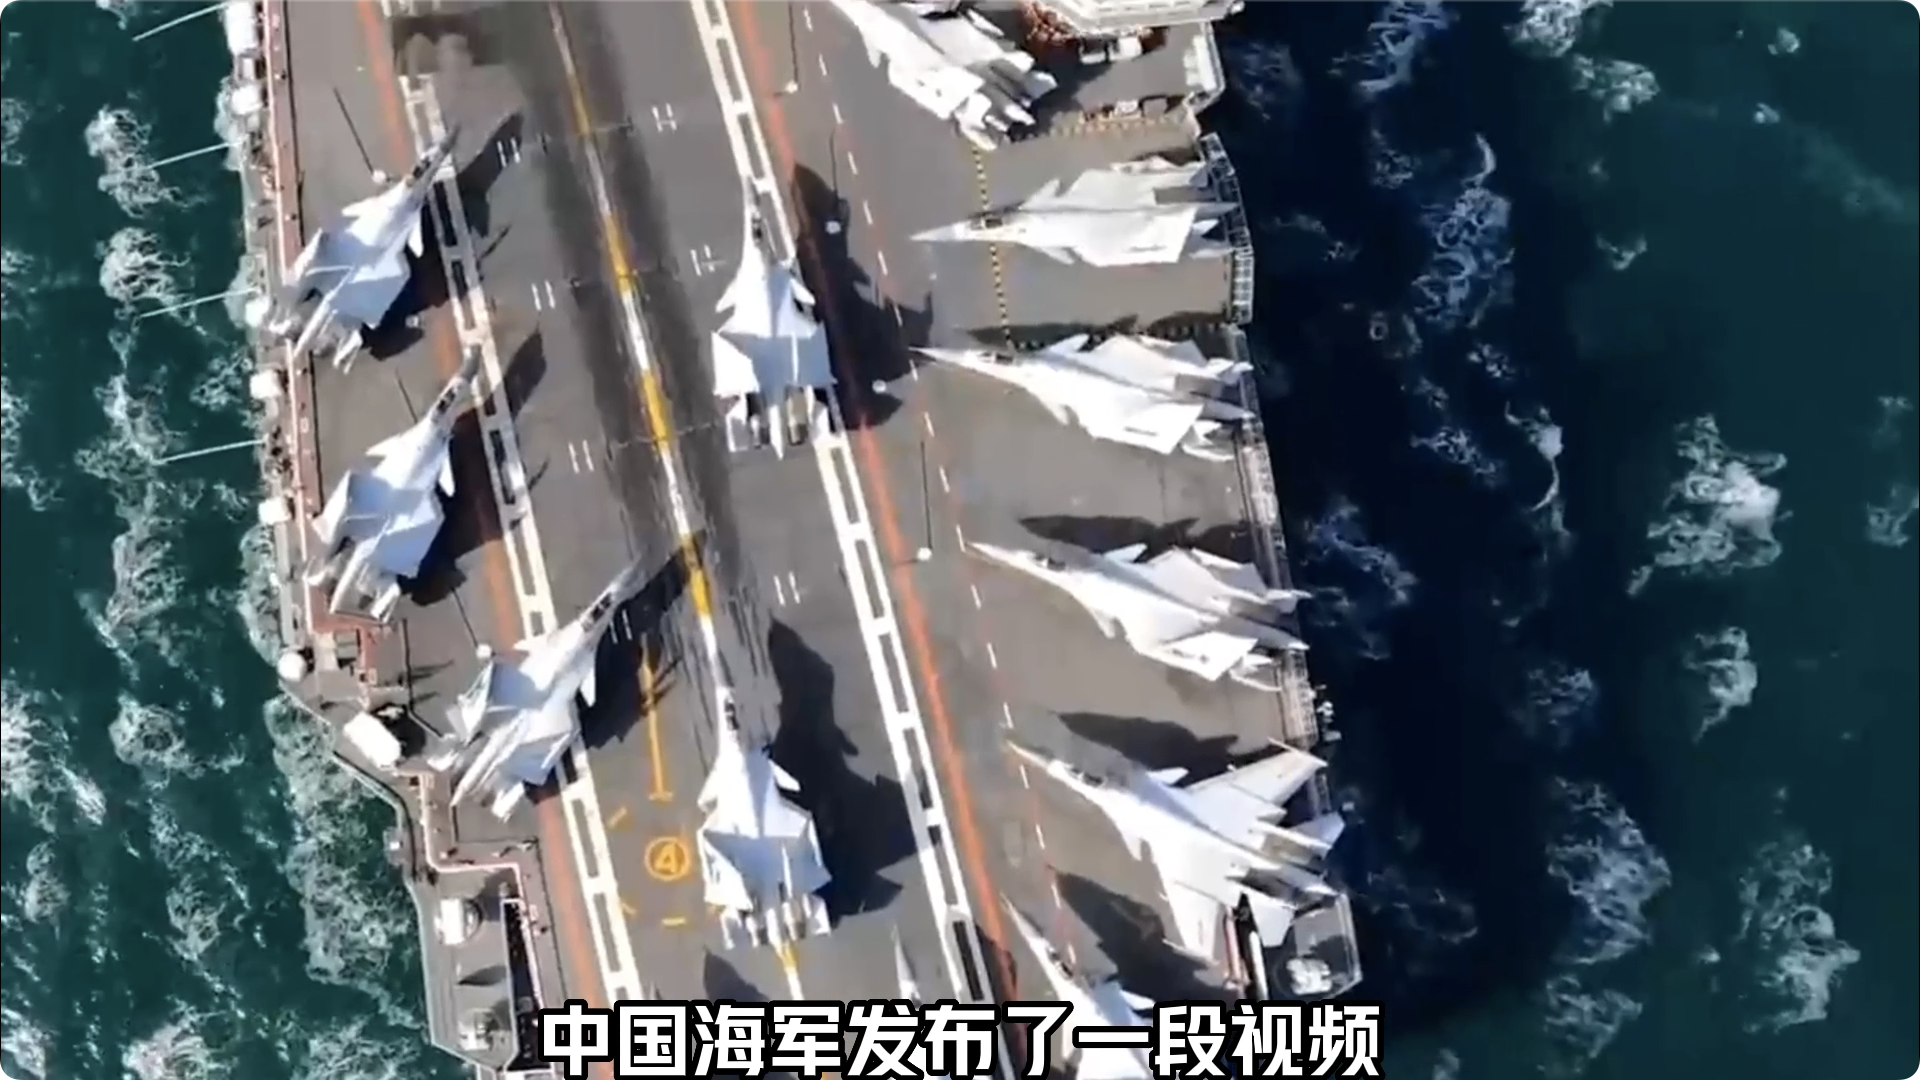 中国三大航母名字有何意义,中国第四艘航母最新情况